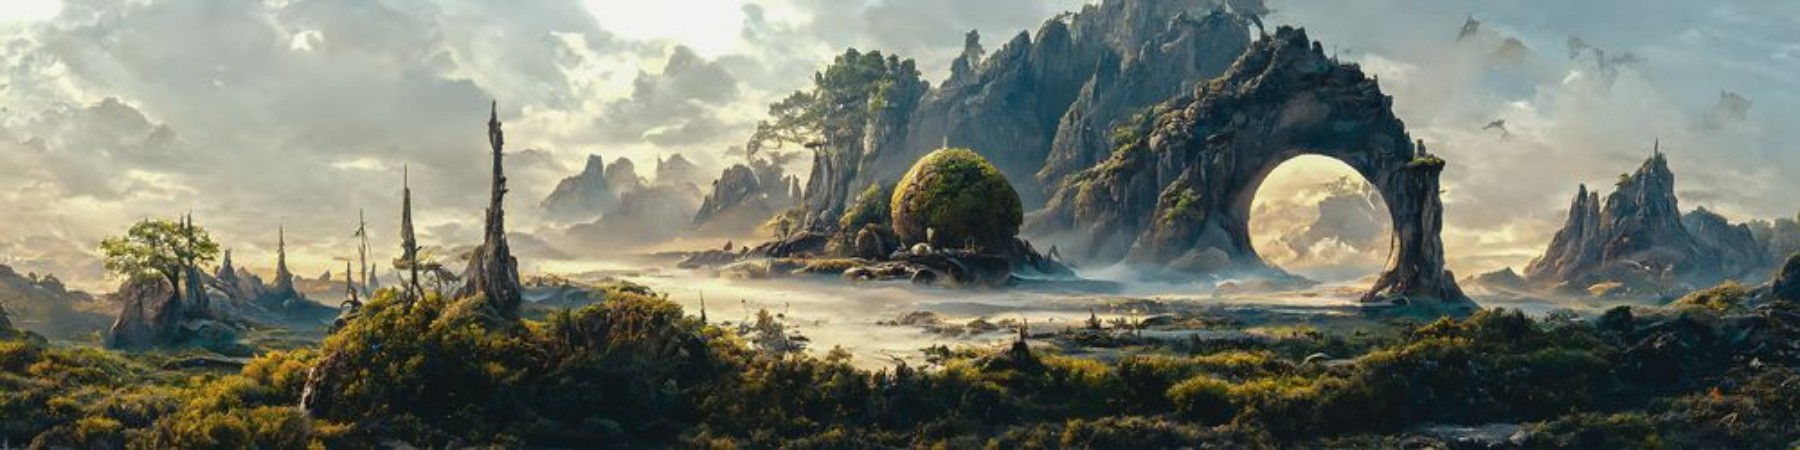 Picture of Fantasy landscape I